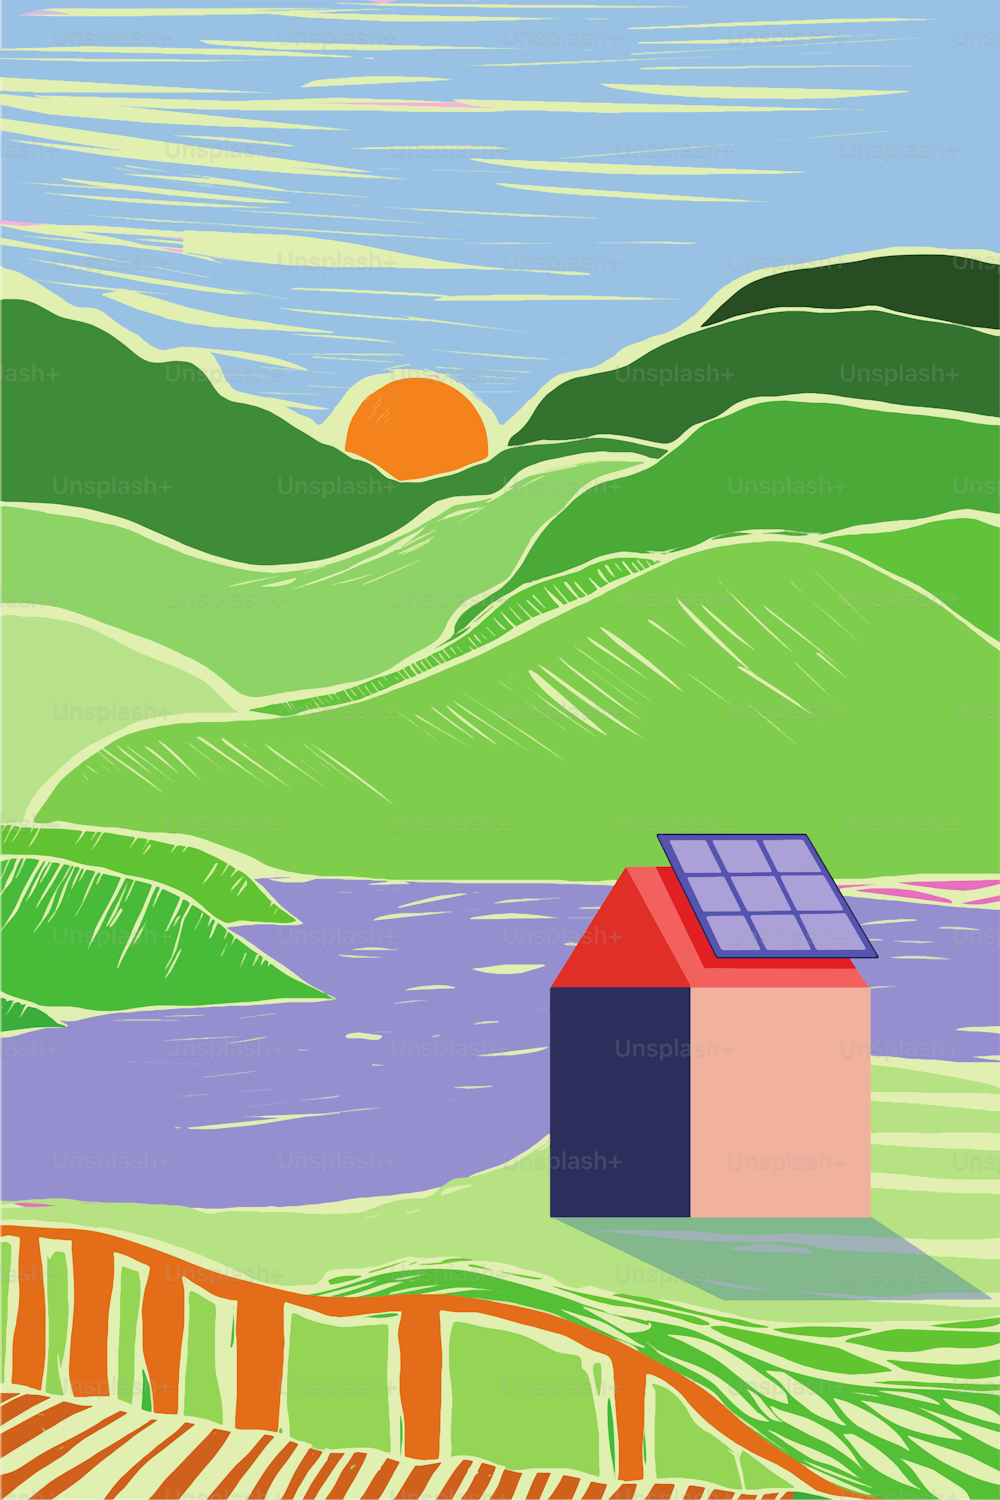 옥상에 태양 전지판을 설치하여 친환경적이고 지속 가능한 작은 마을. 판화 스타일